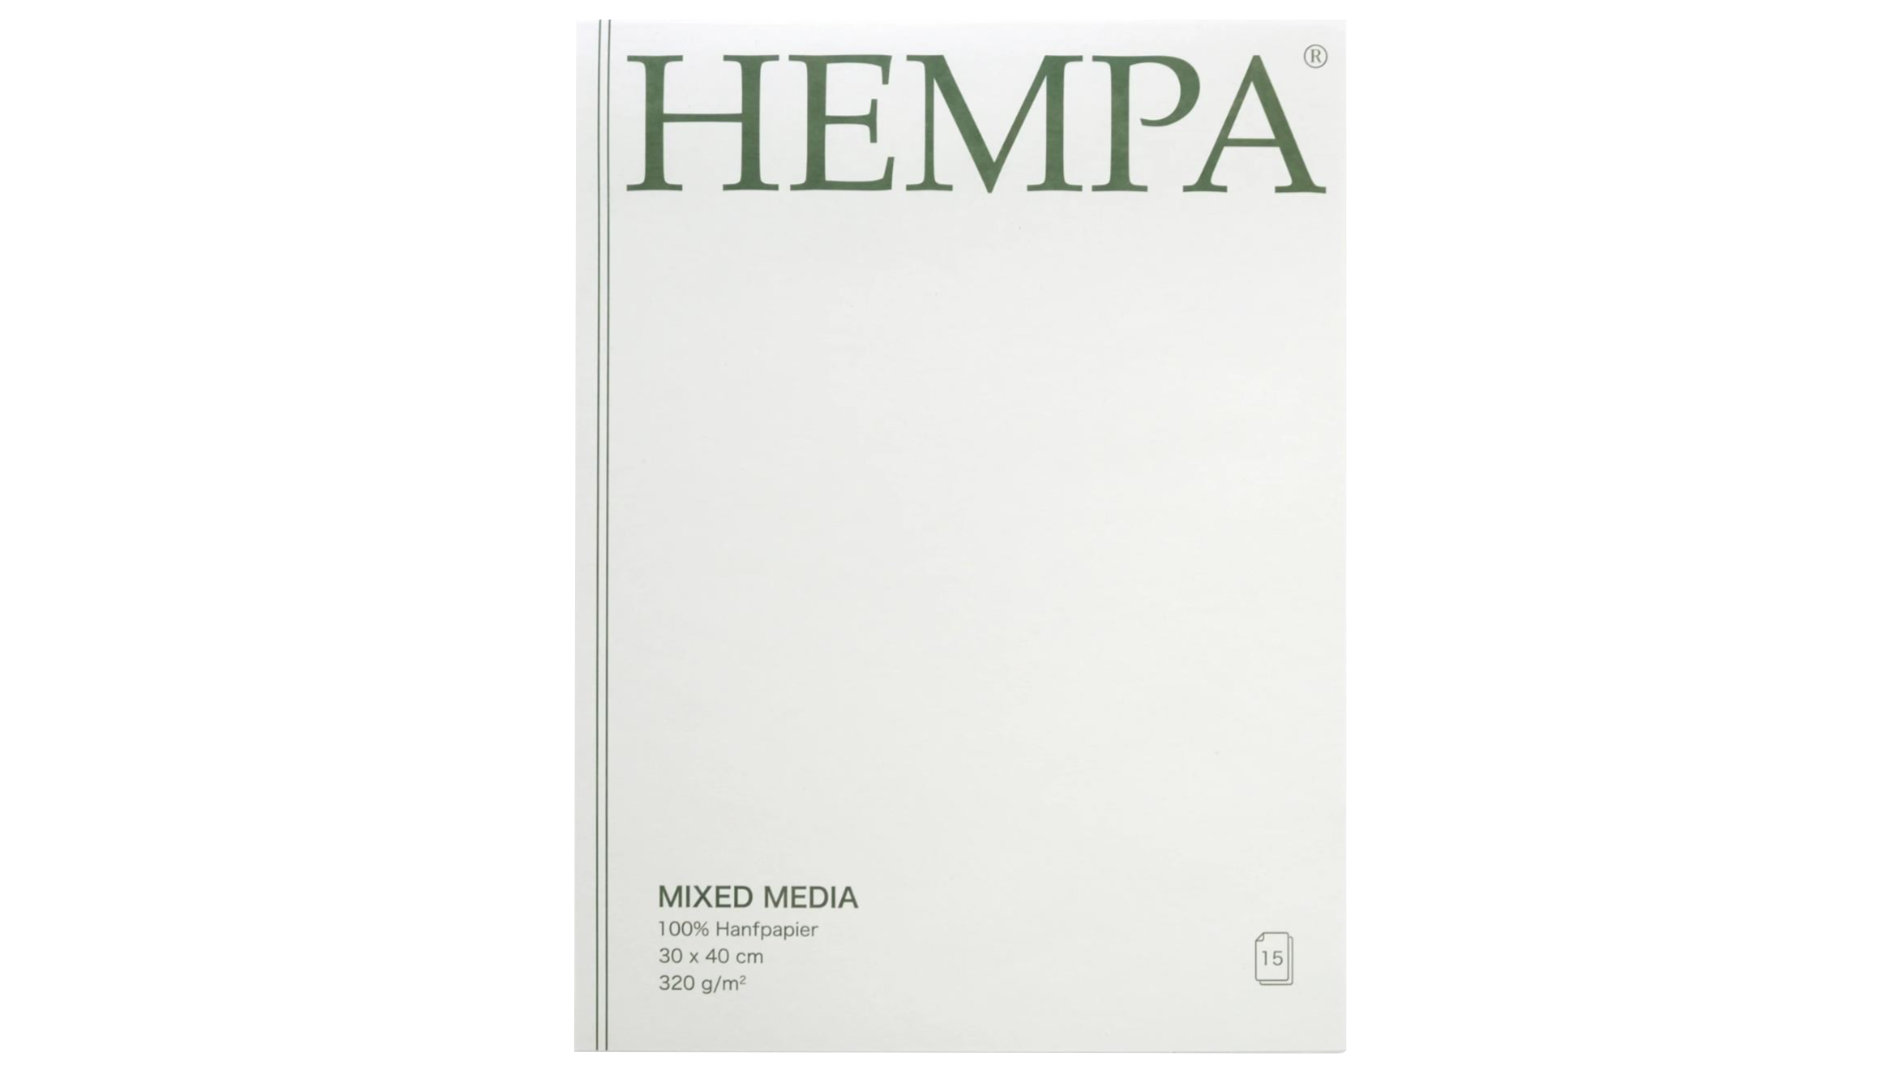 Hempa Papierprodukte – HEMPA colouring pad